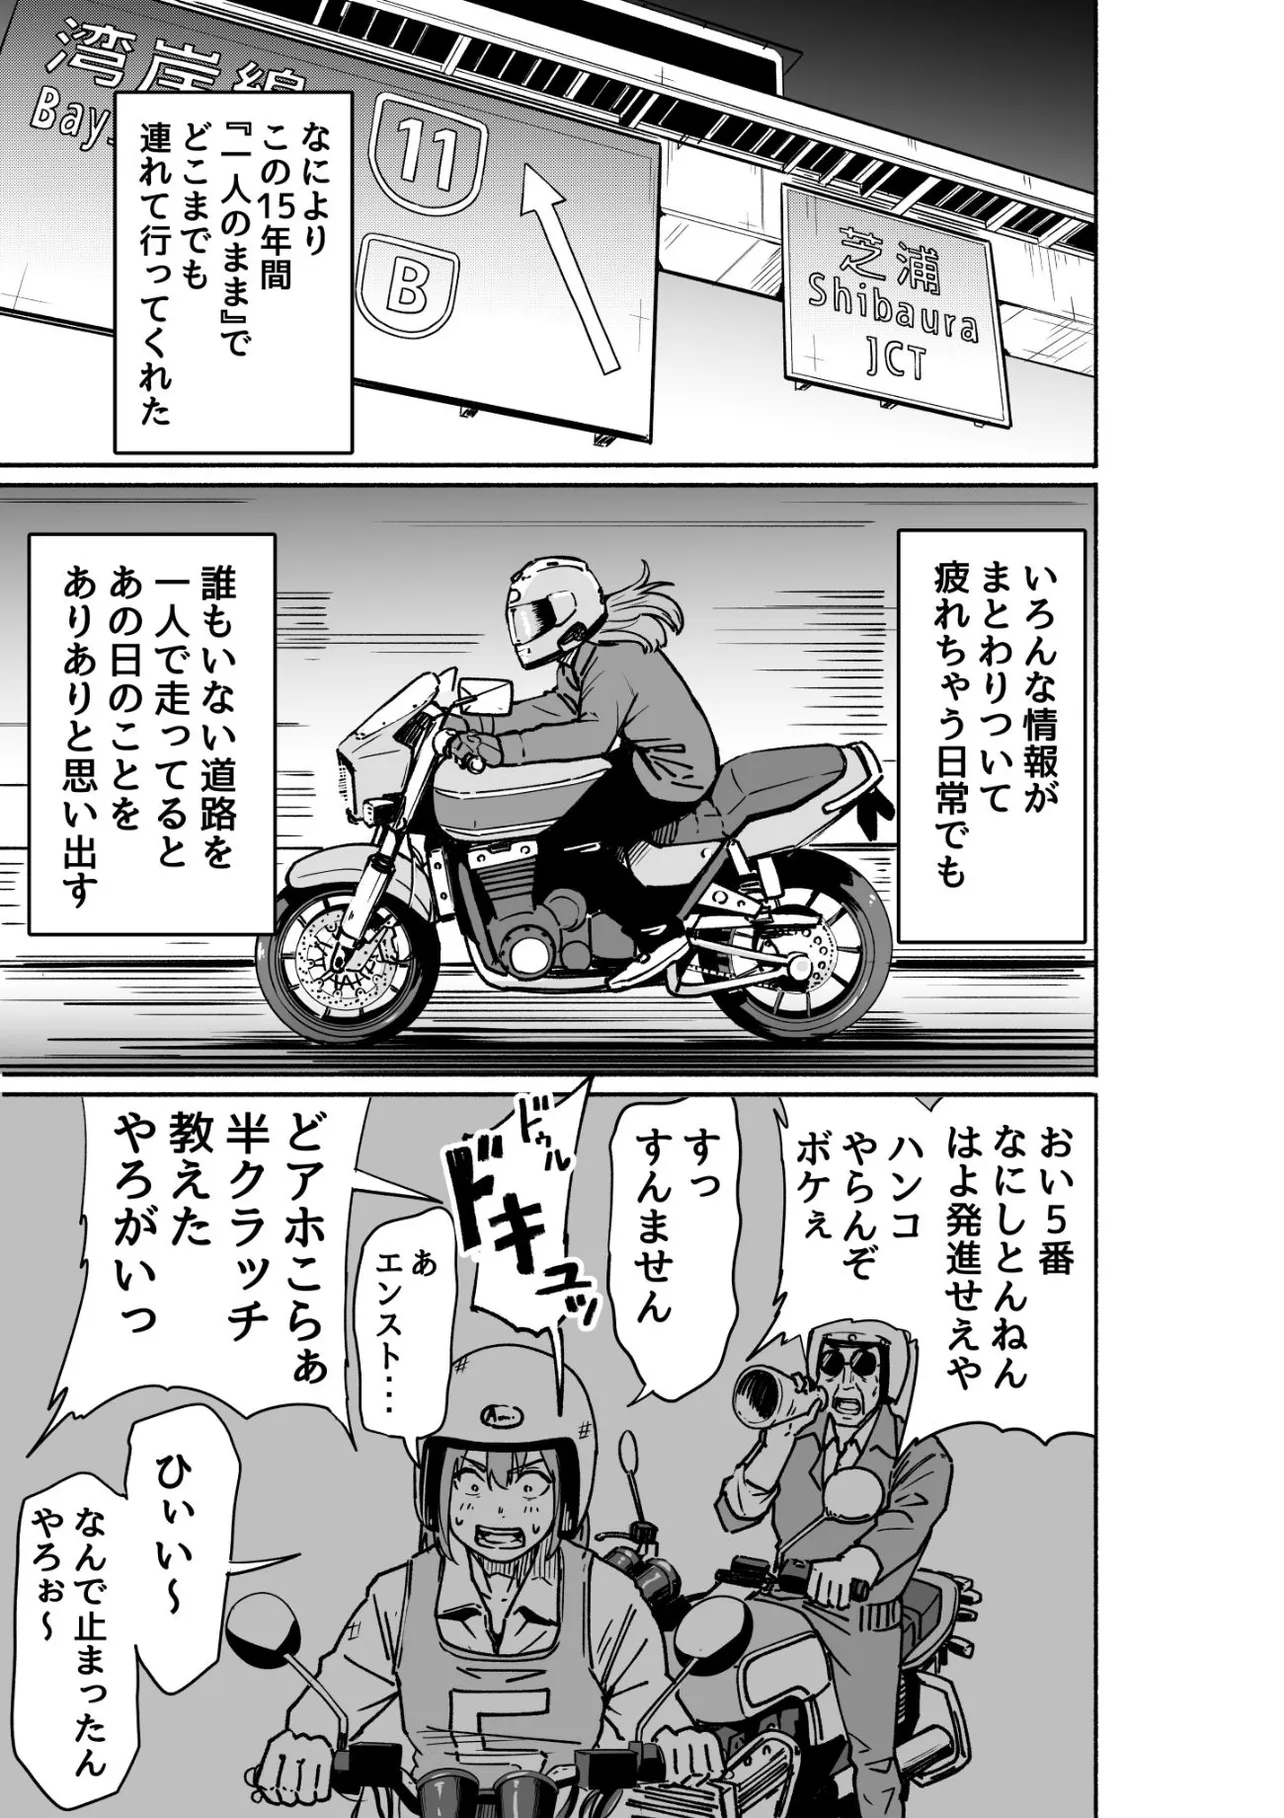 『バイクの話』(5／7)